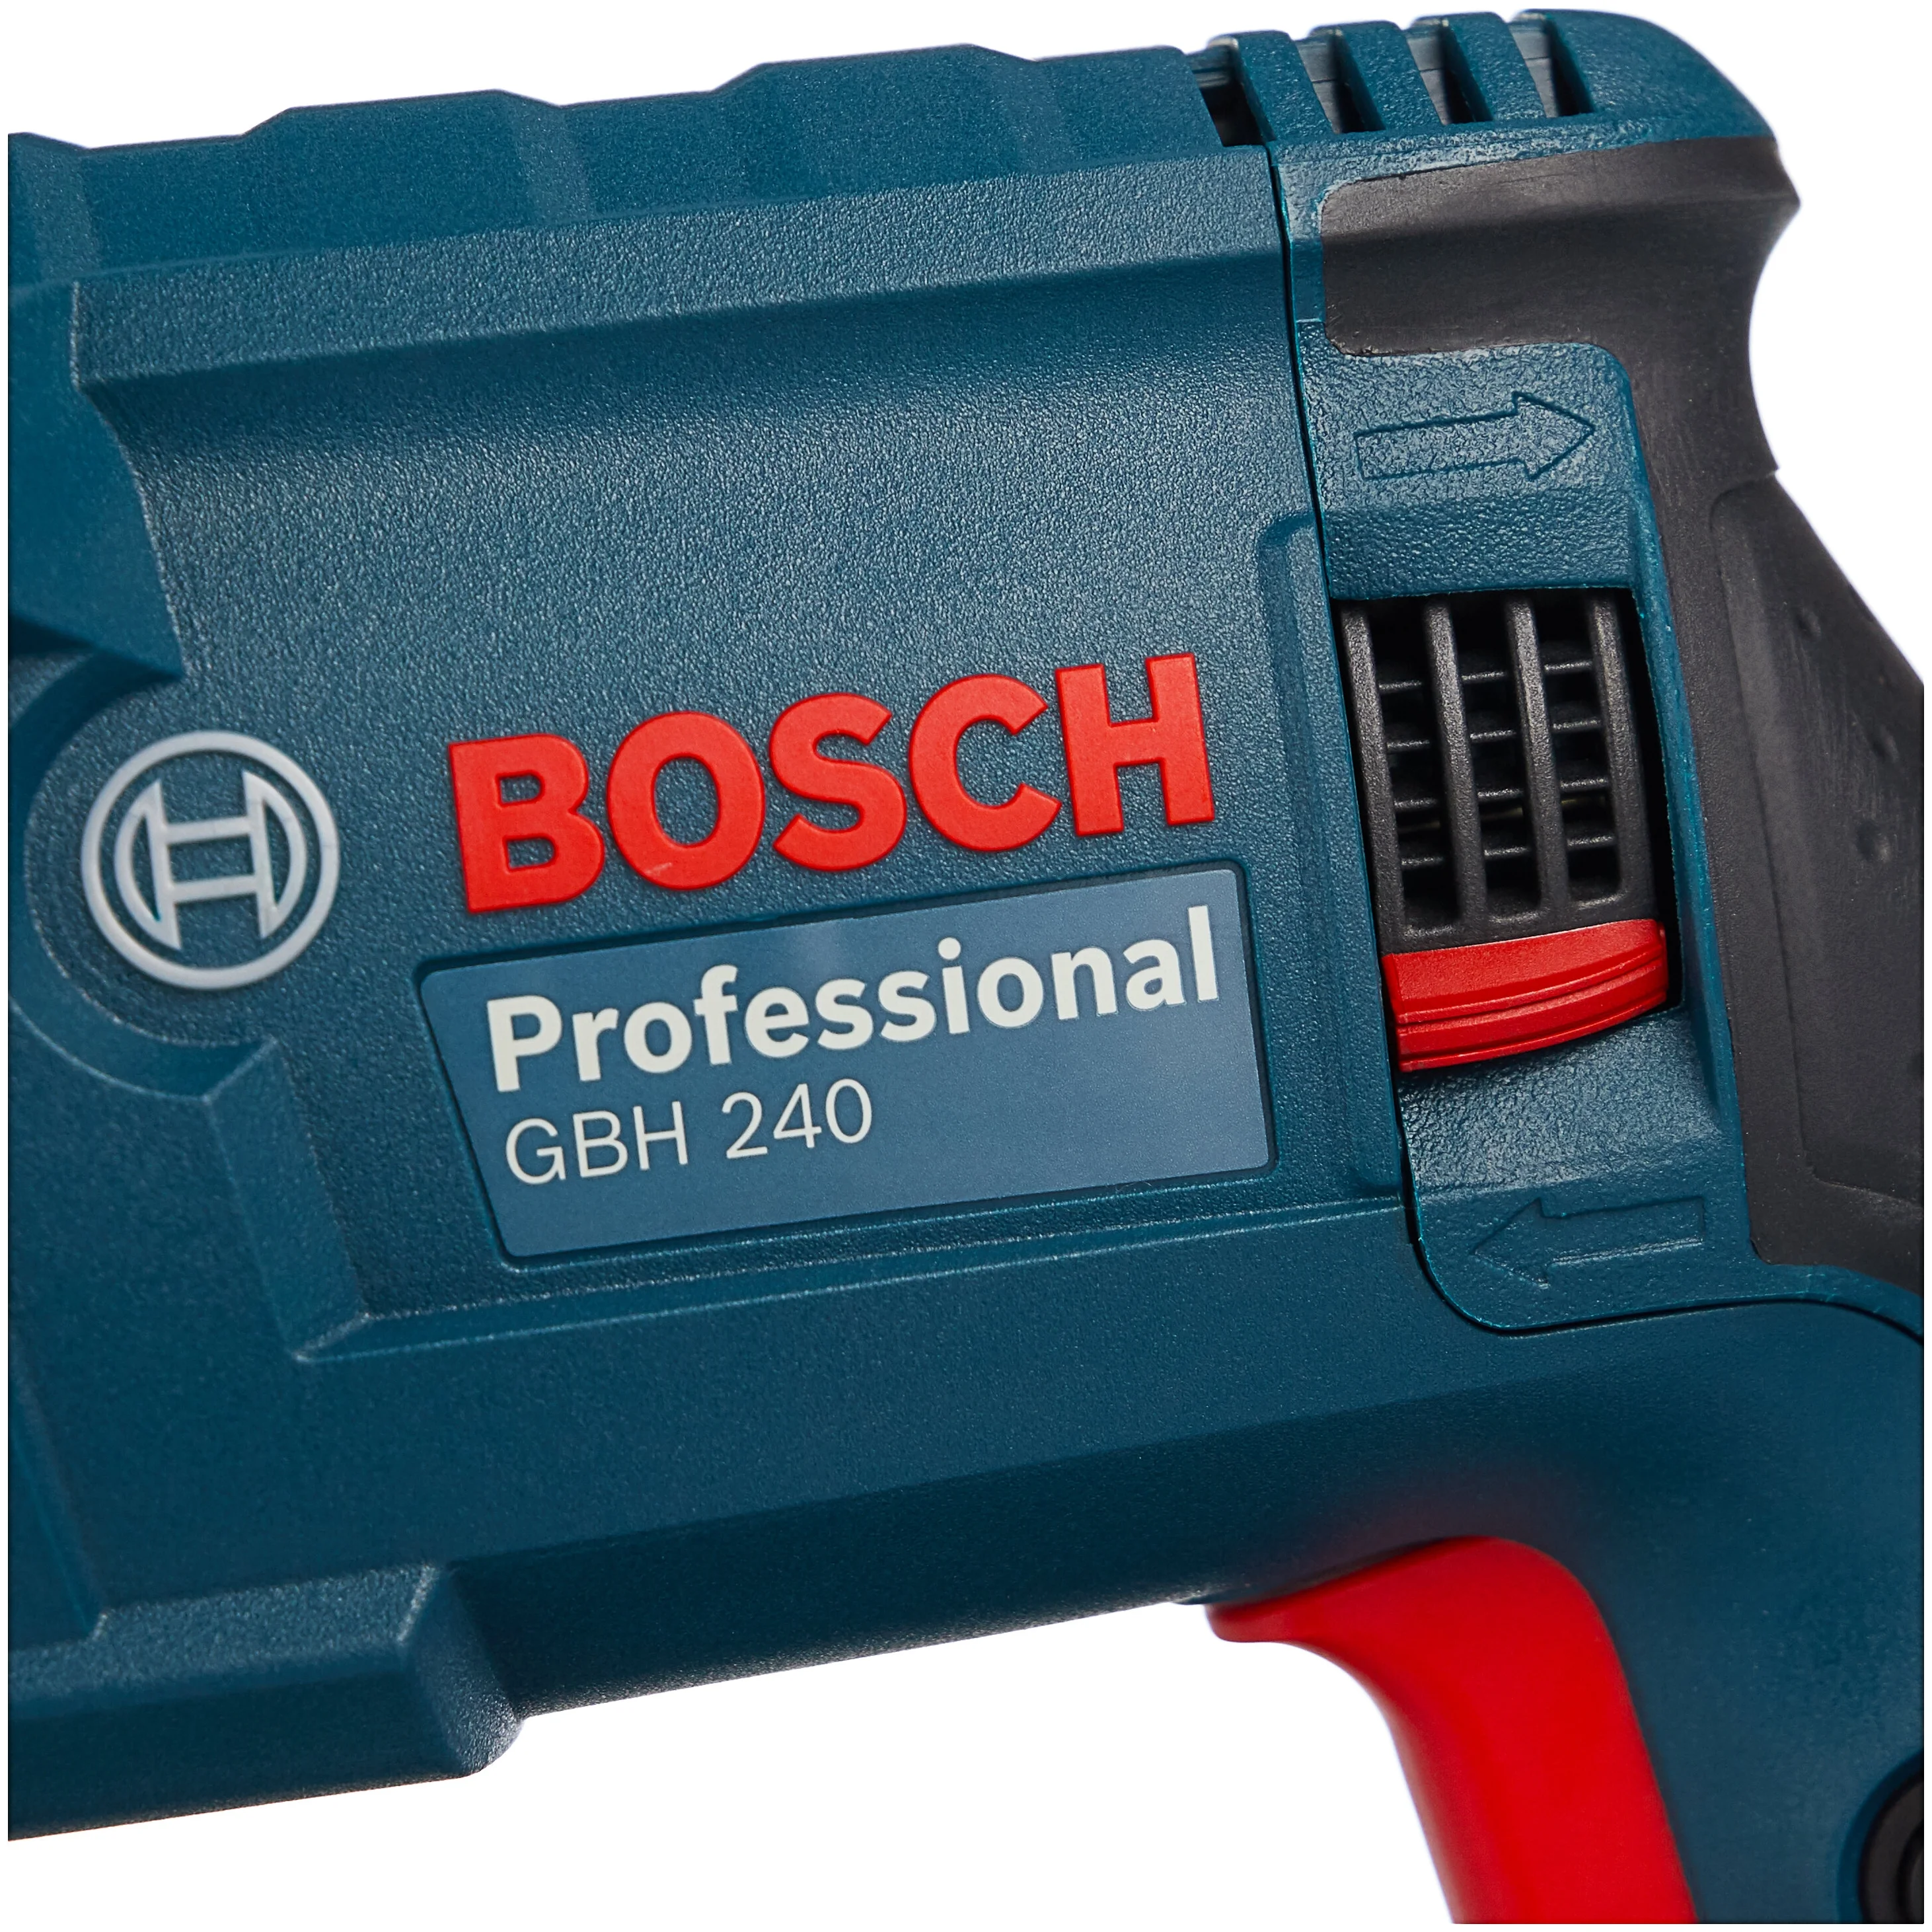 BOSCH GBH 240, 790 Вт - функции: реверс, шуруповерт, регулировка частоты вращения